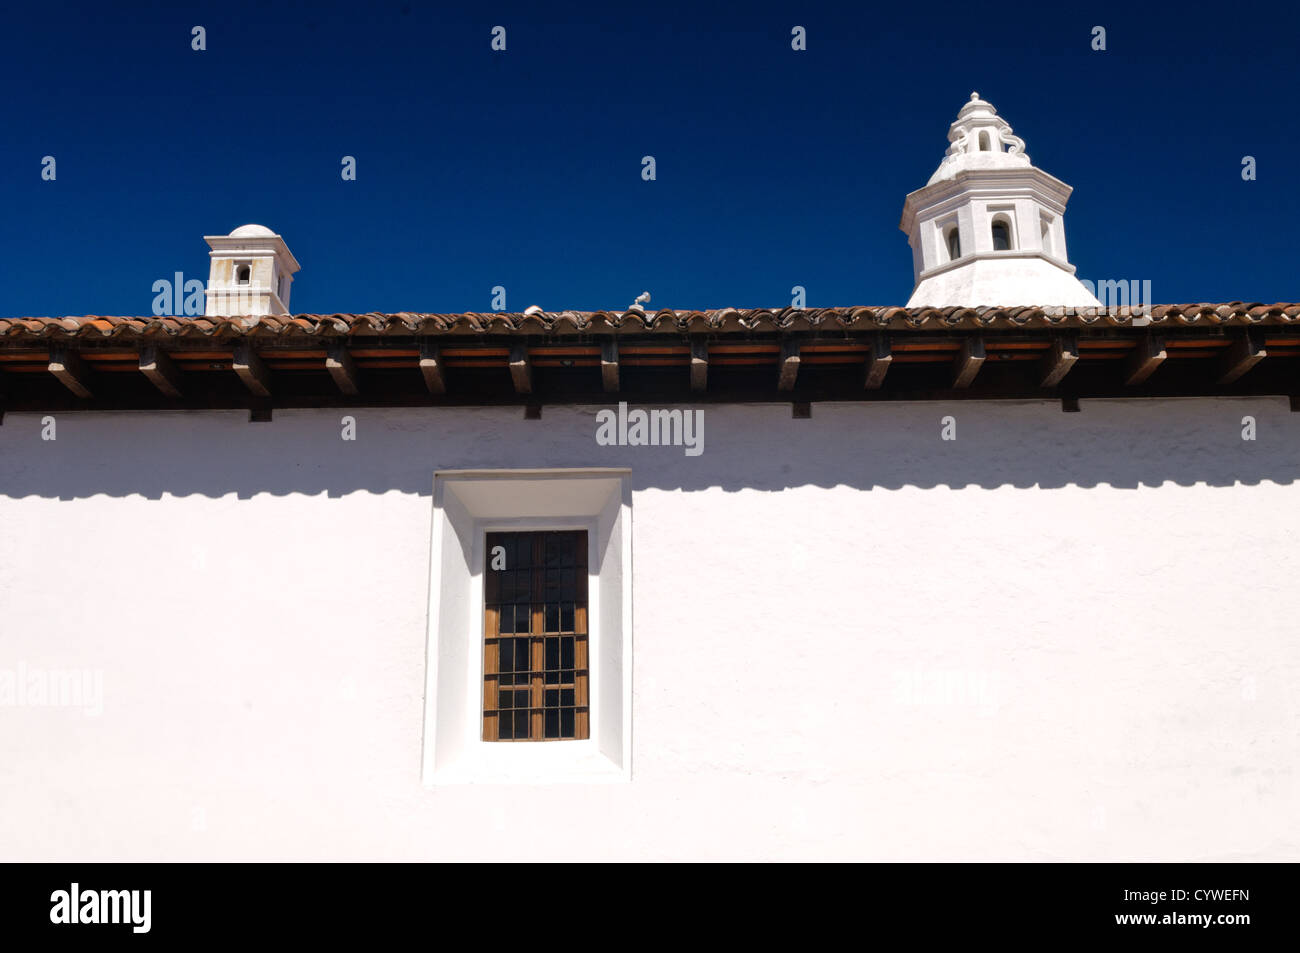 Célèbre pour son bien-préservé l'architecture baroque espagnole ainsi qu'un certain nombre de ruines de tremblements, Antigua Guatemala est un UNESCO World Heritage Site et ancienne capitale du Guatemala. Banque D'Images